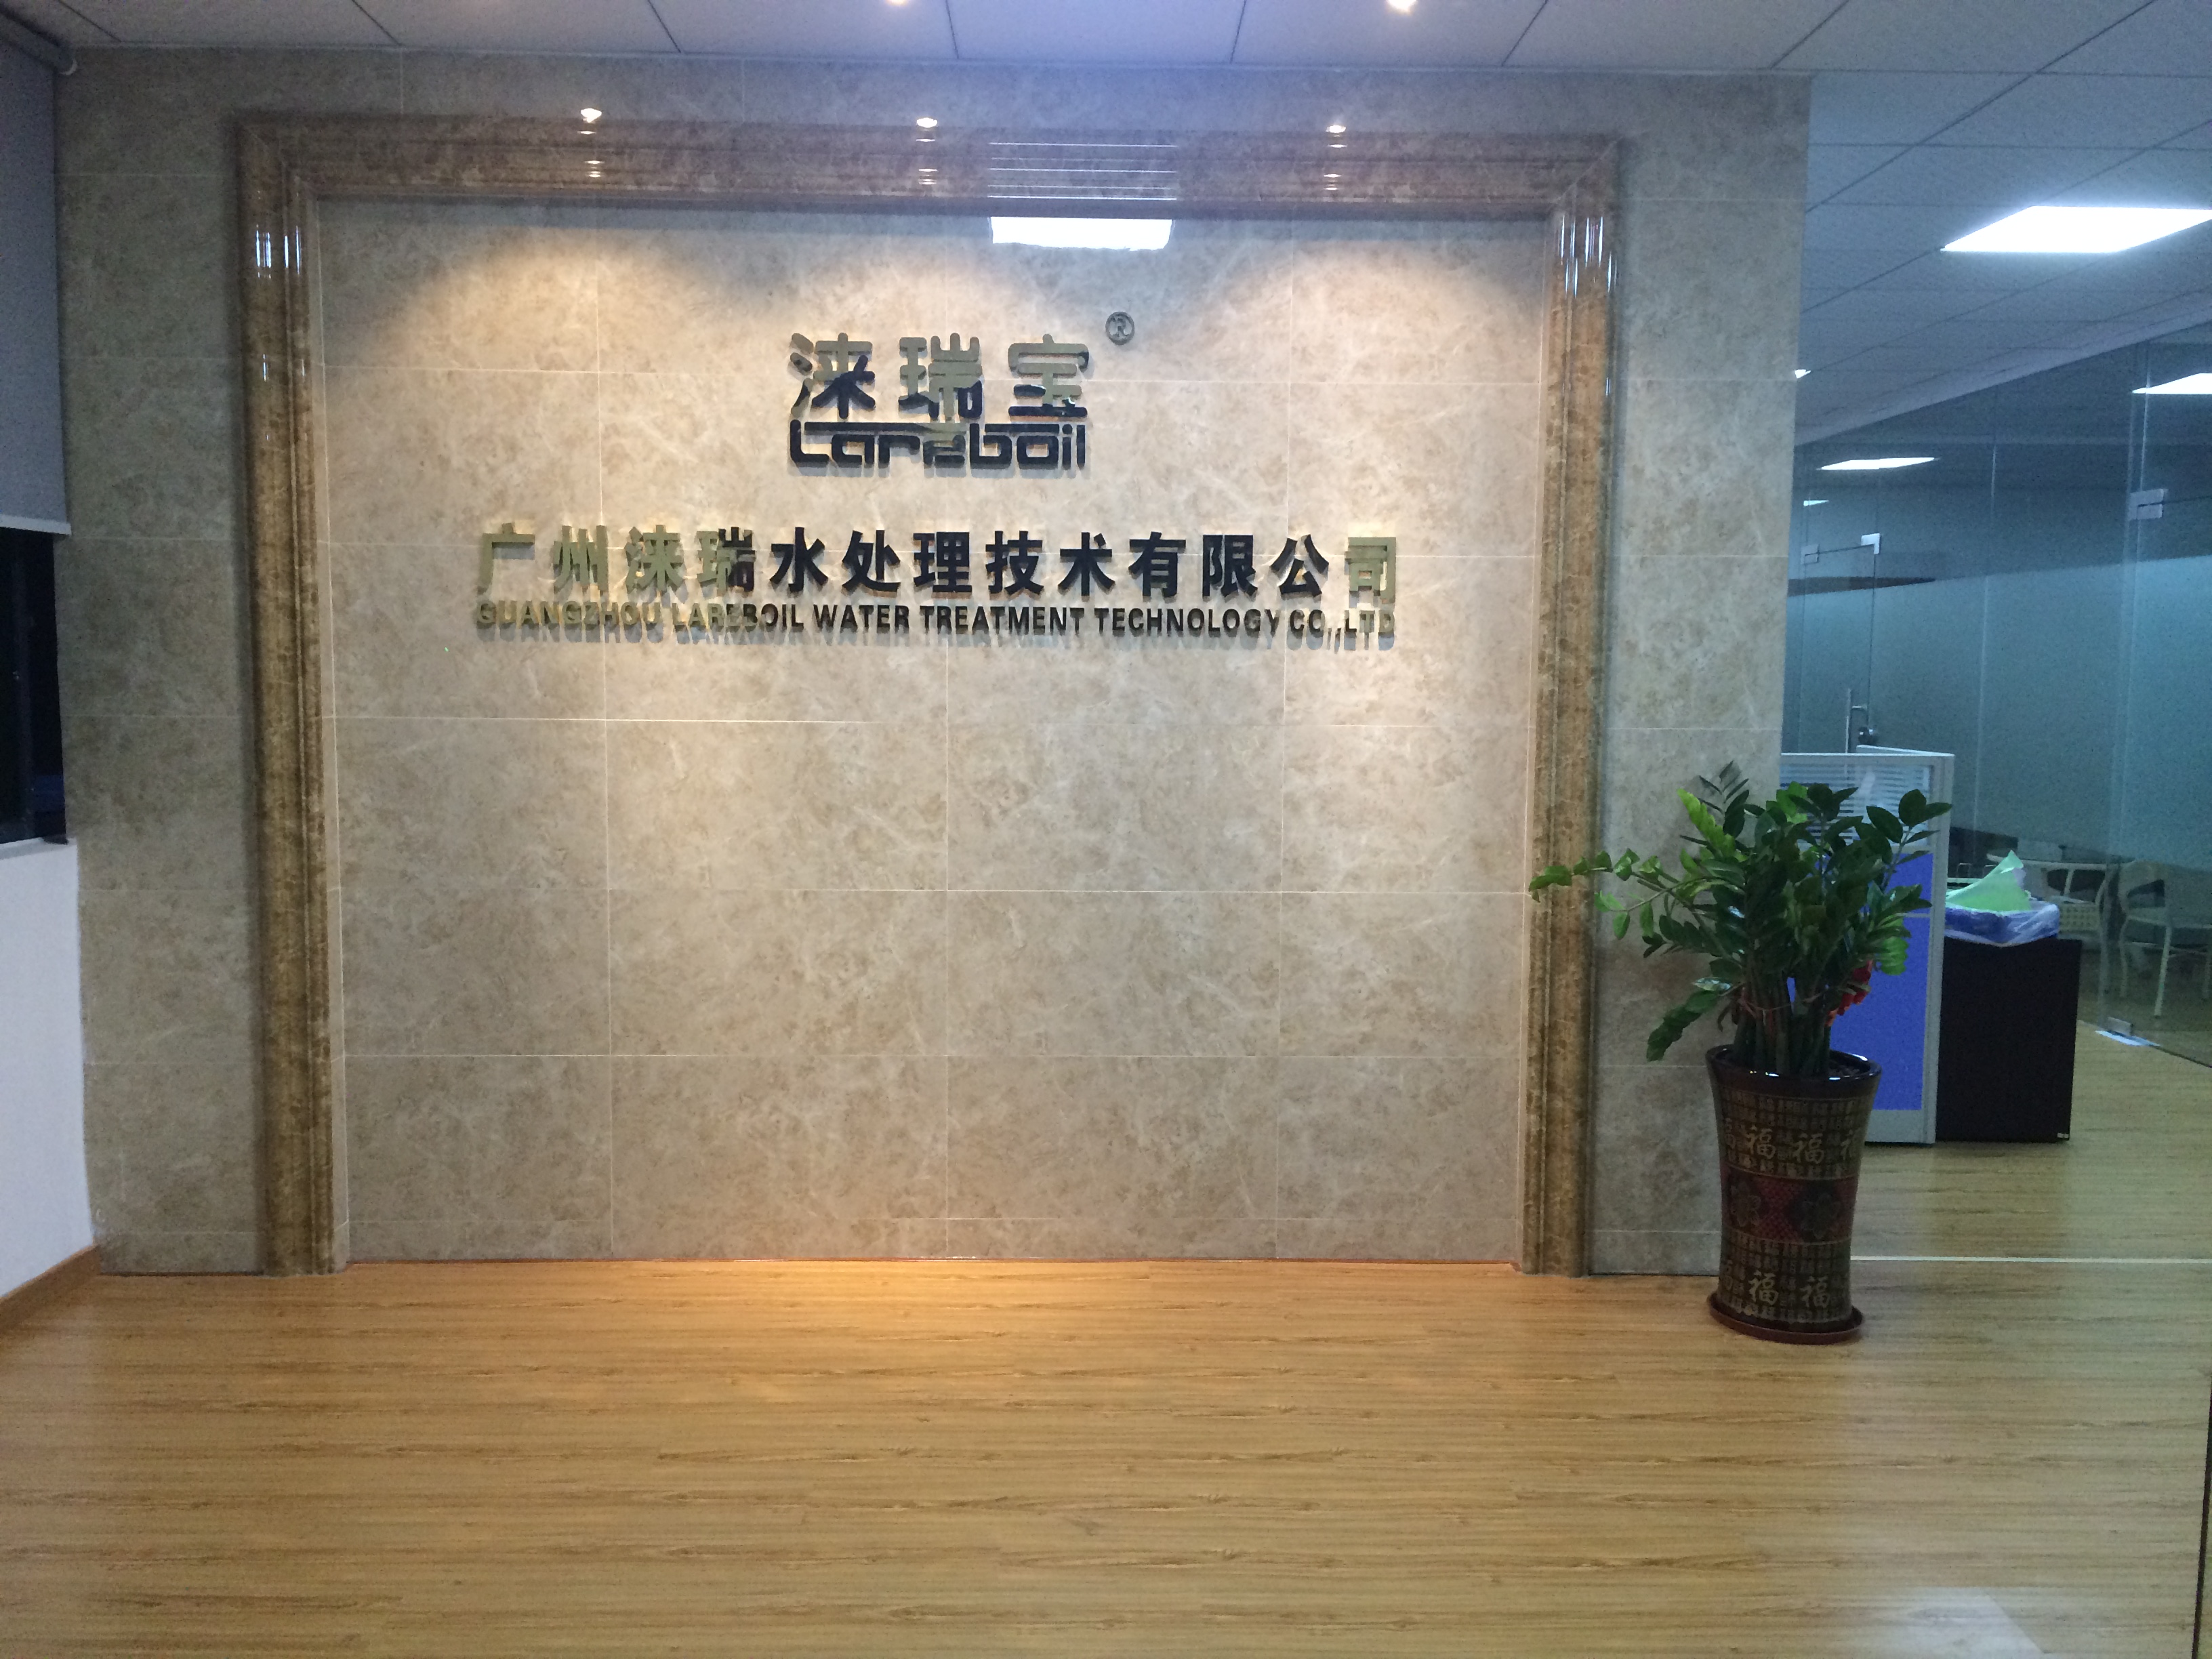 广州涞瑞水处理技术有限公司官方网站即将发布上线